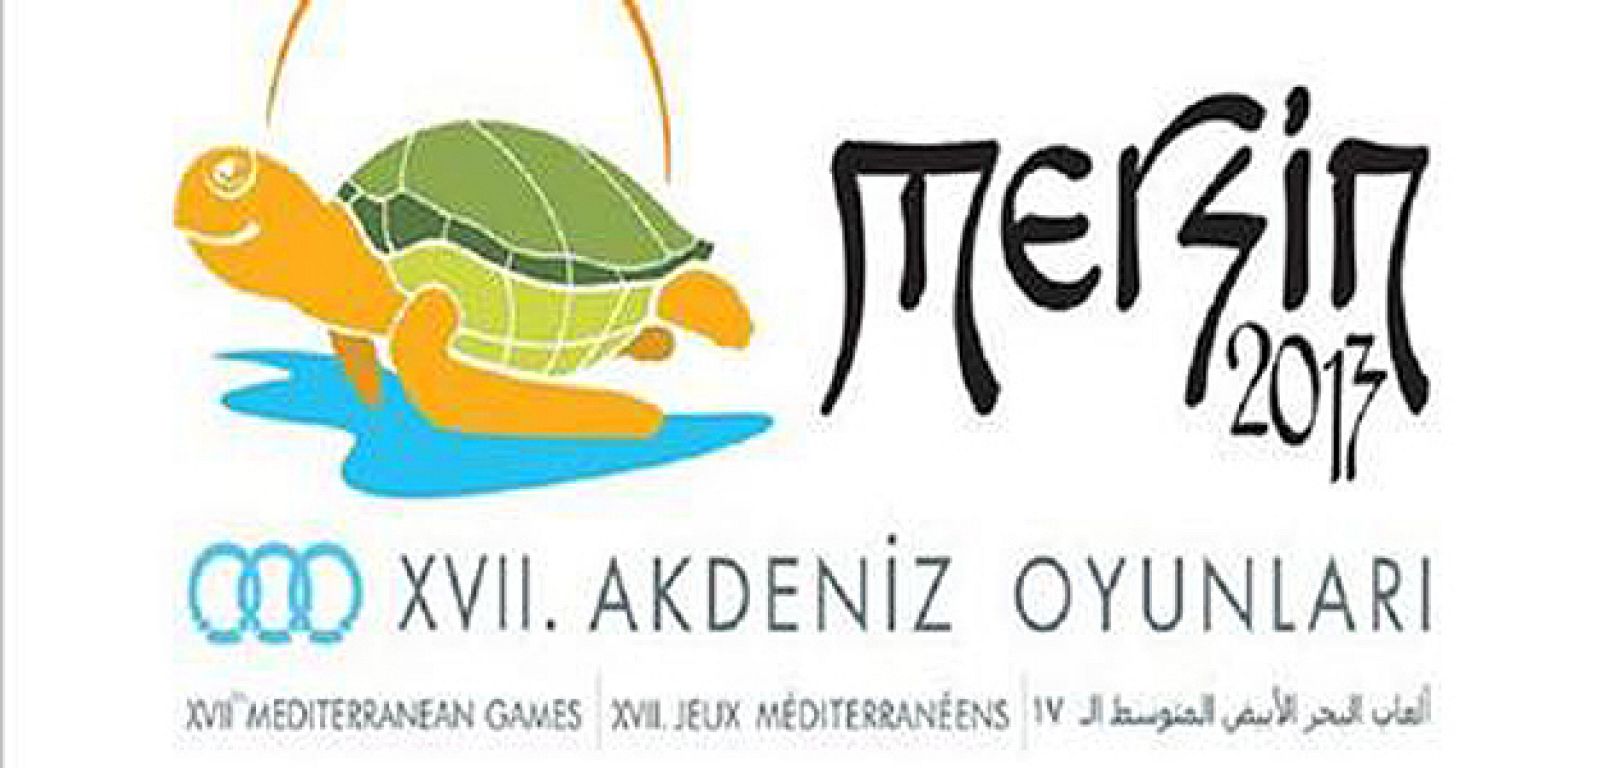 Cartel de los Juegos Mediterráneos 2013